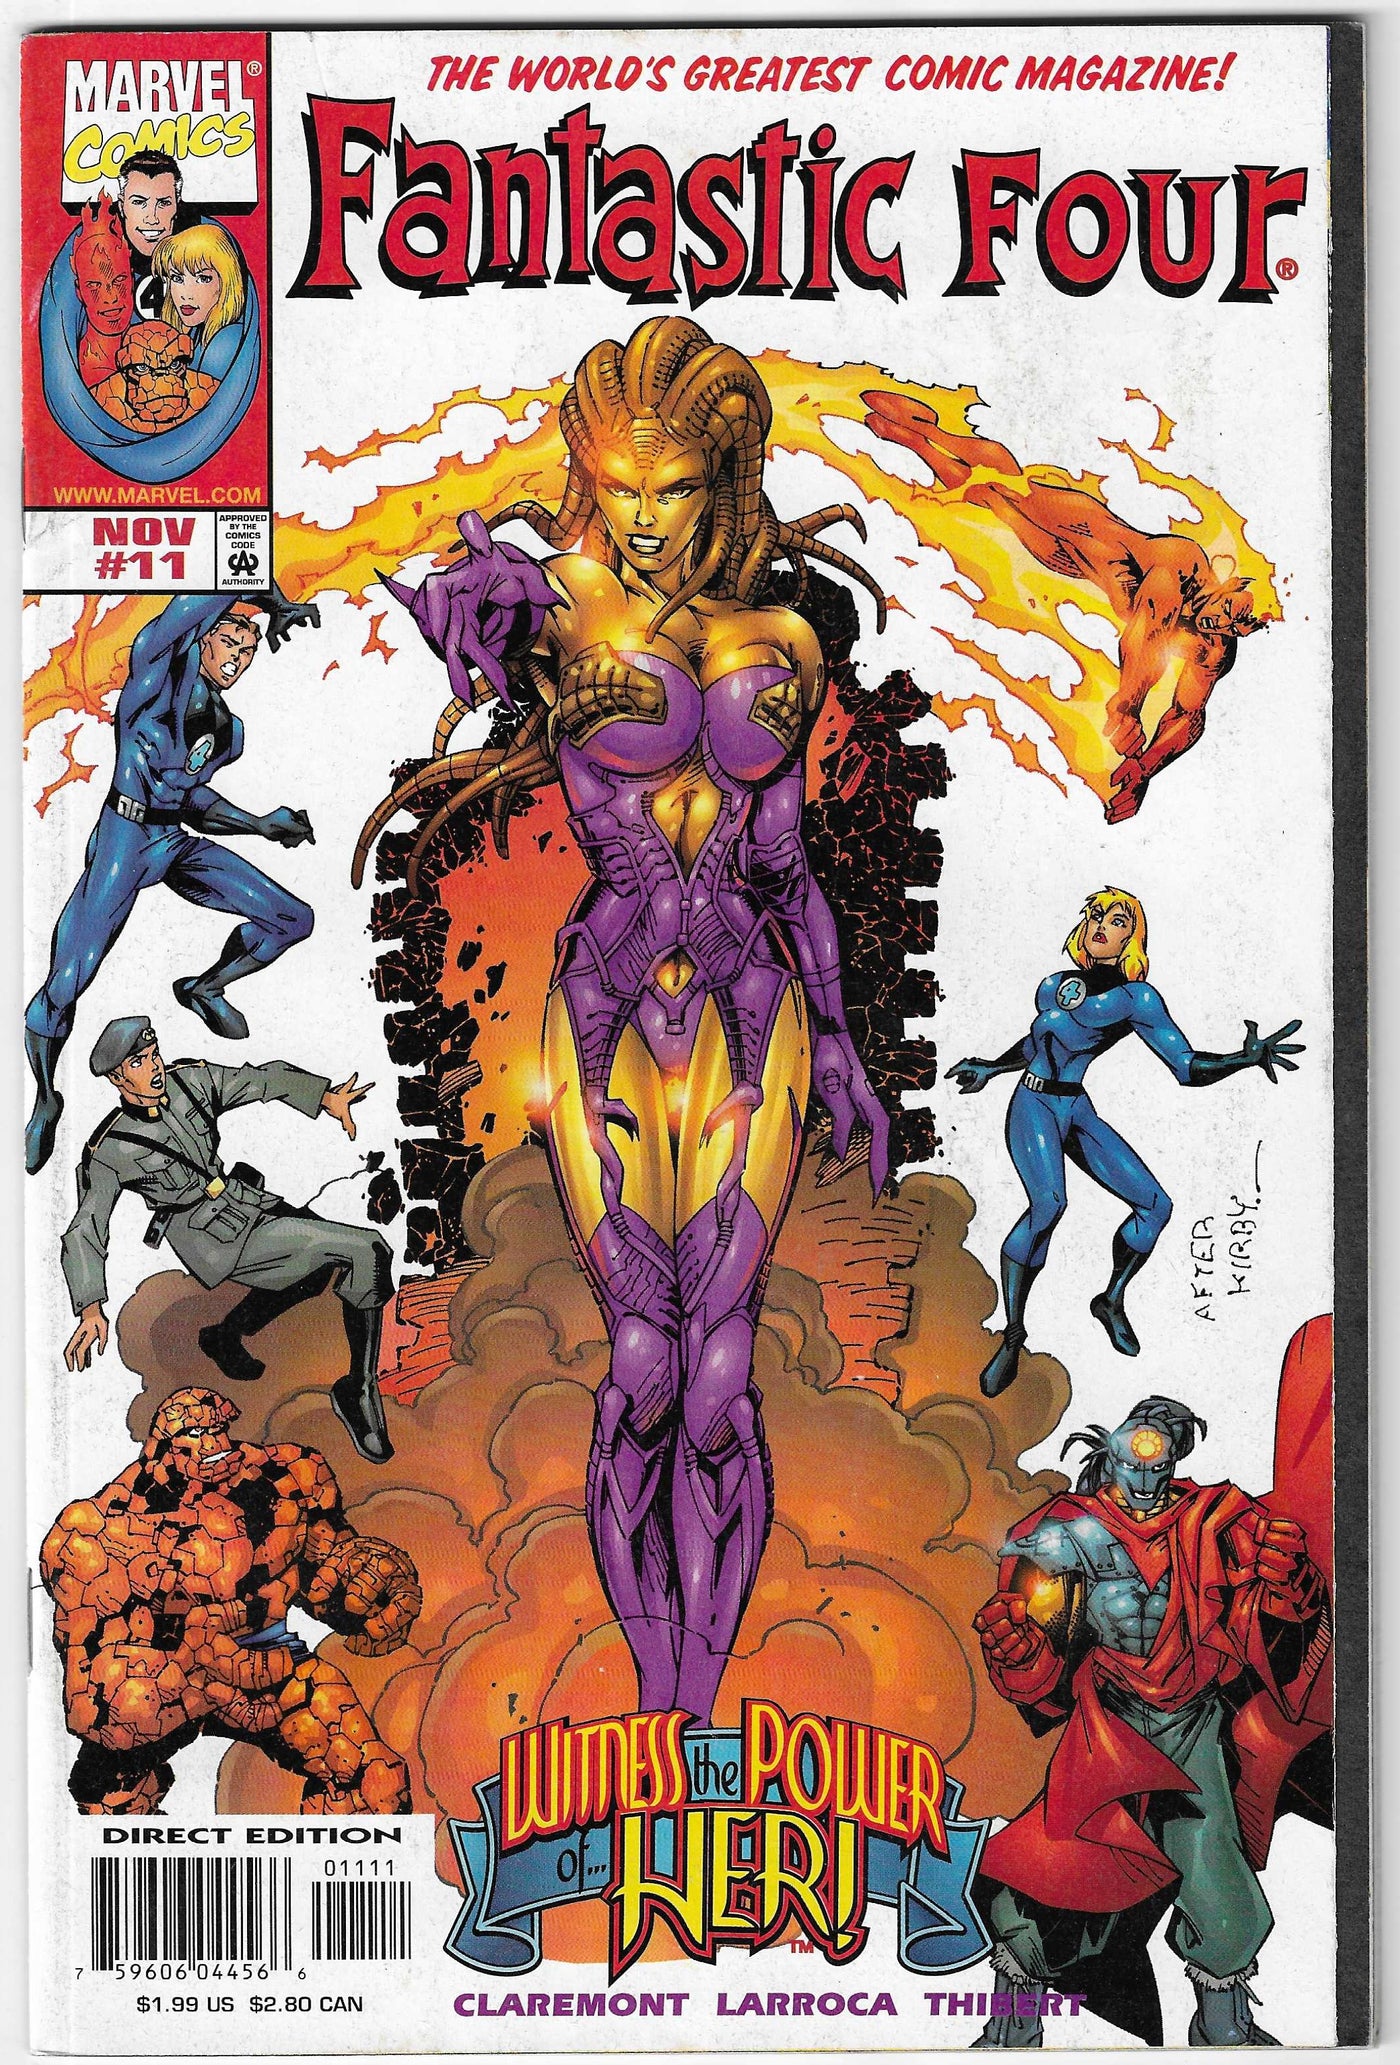 Fantastic Four (Volume 3) #11